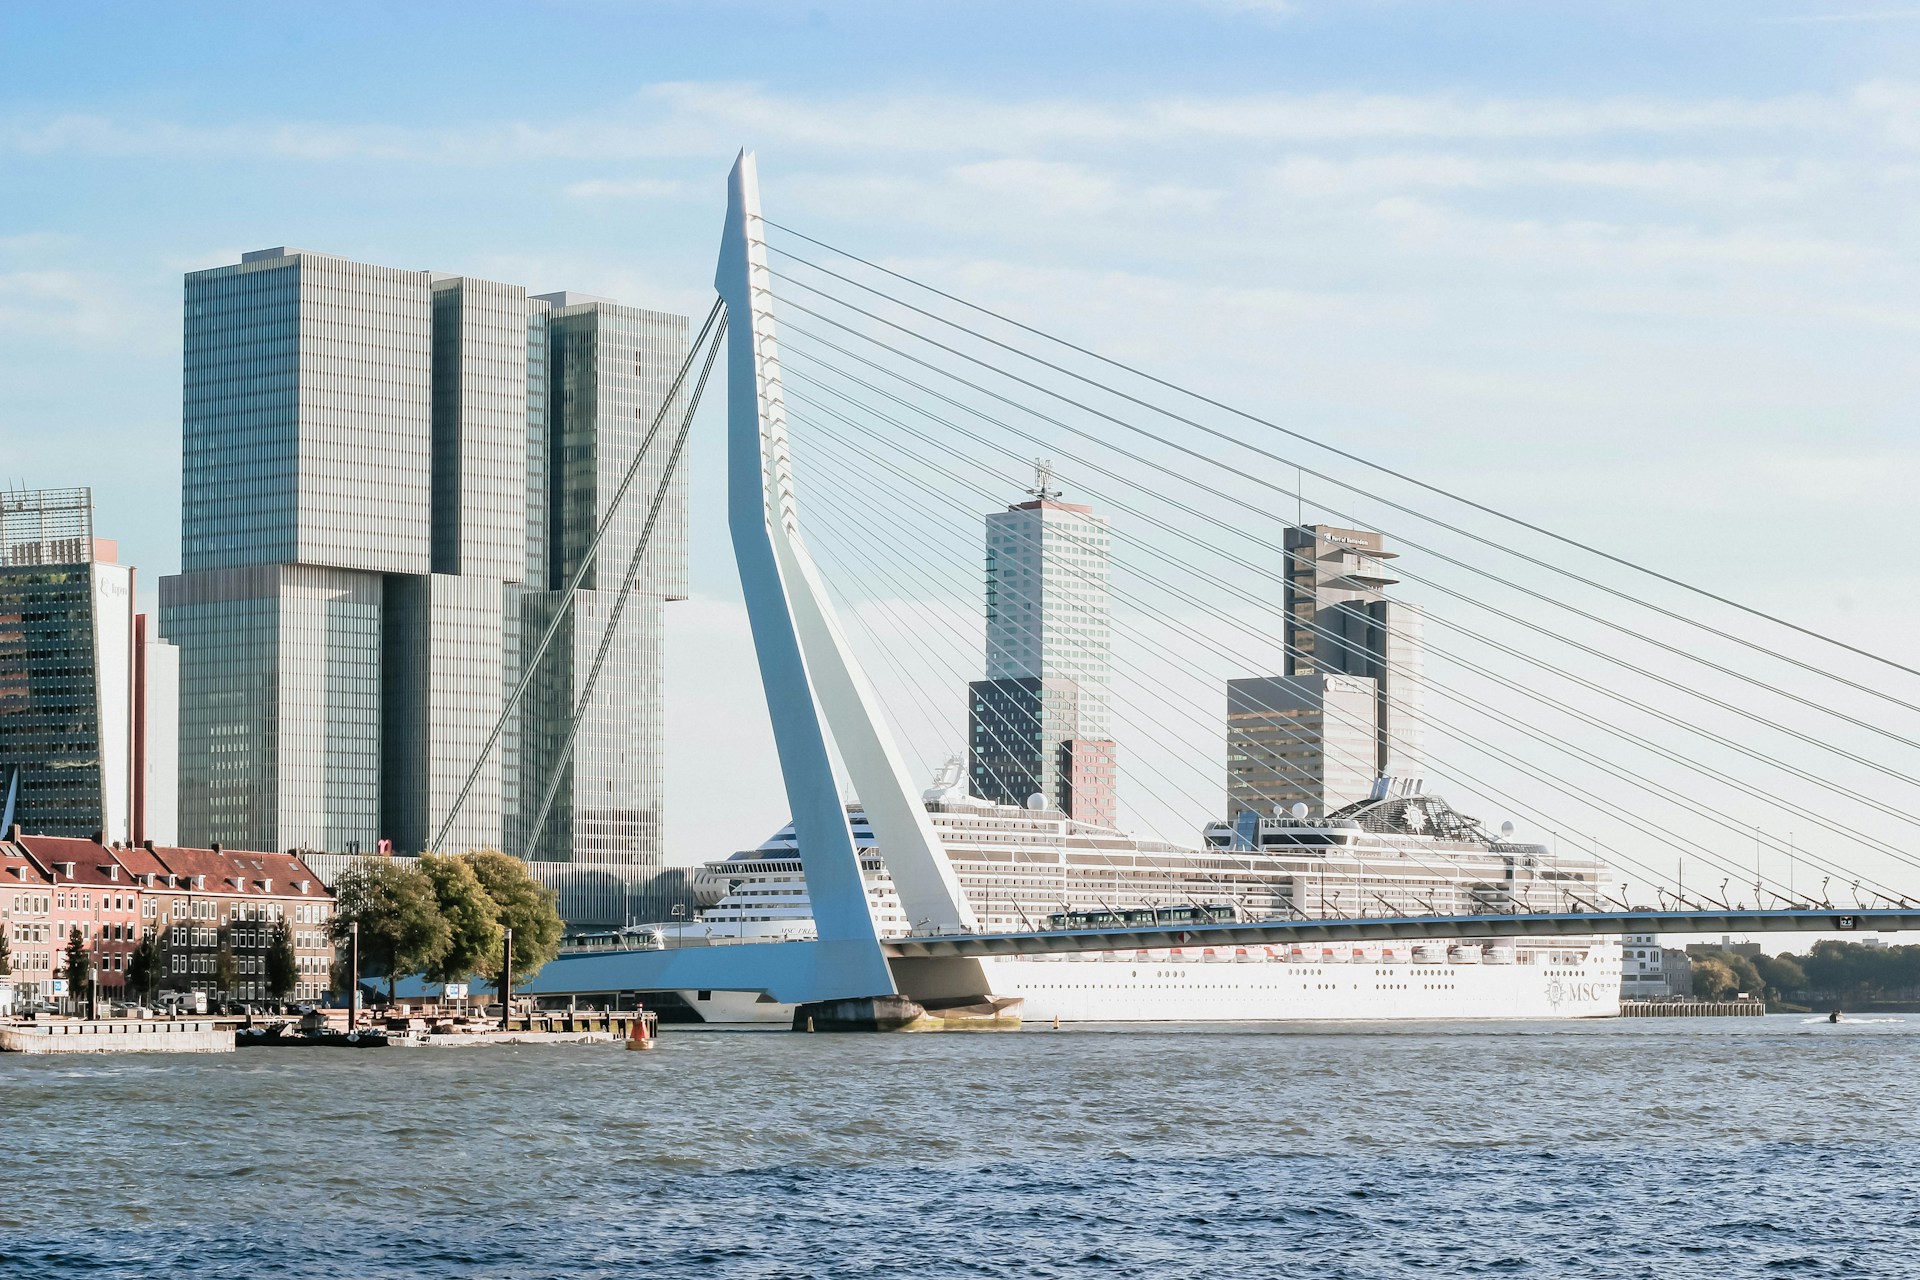 Slight Decrease in Activity at Port of Rotterdam